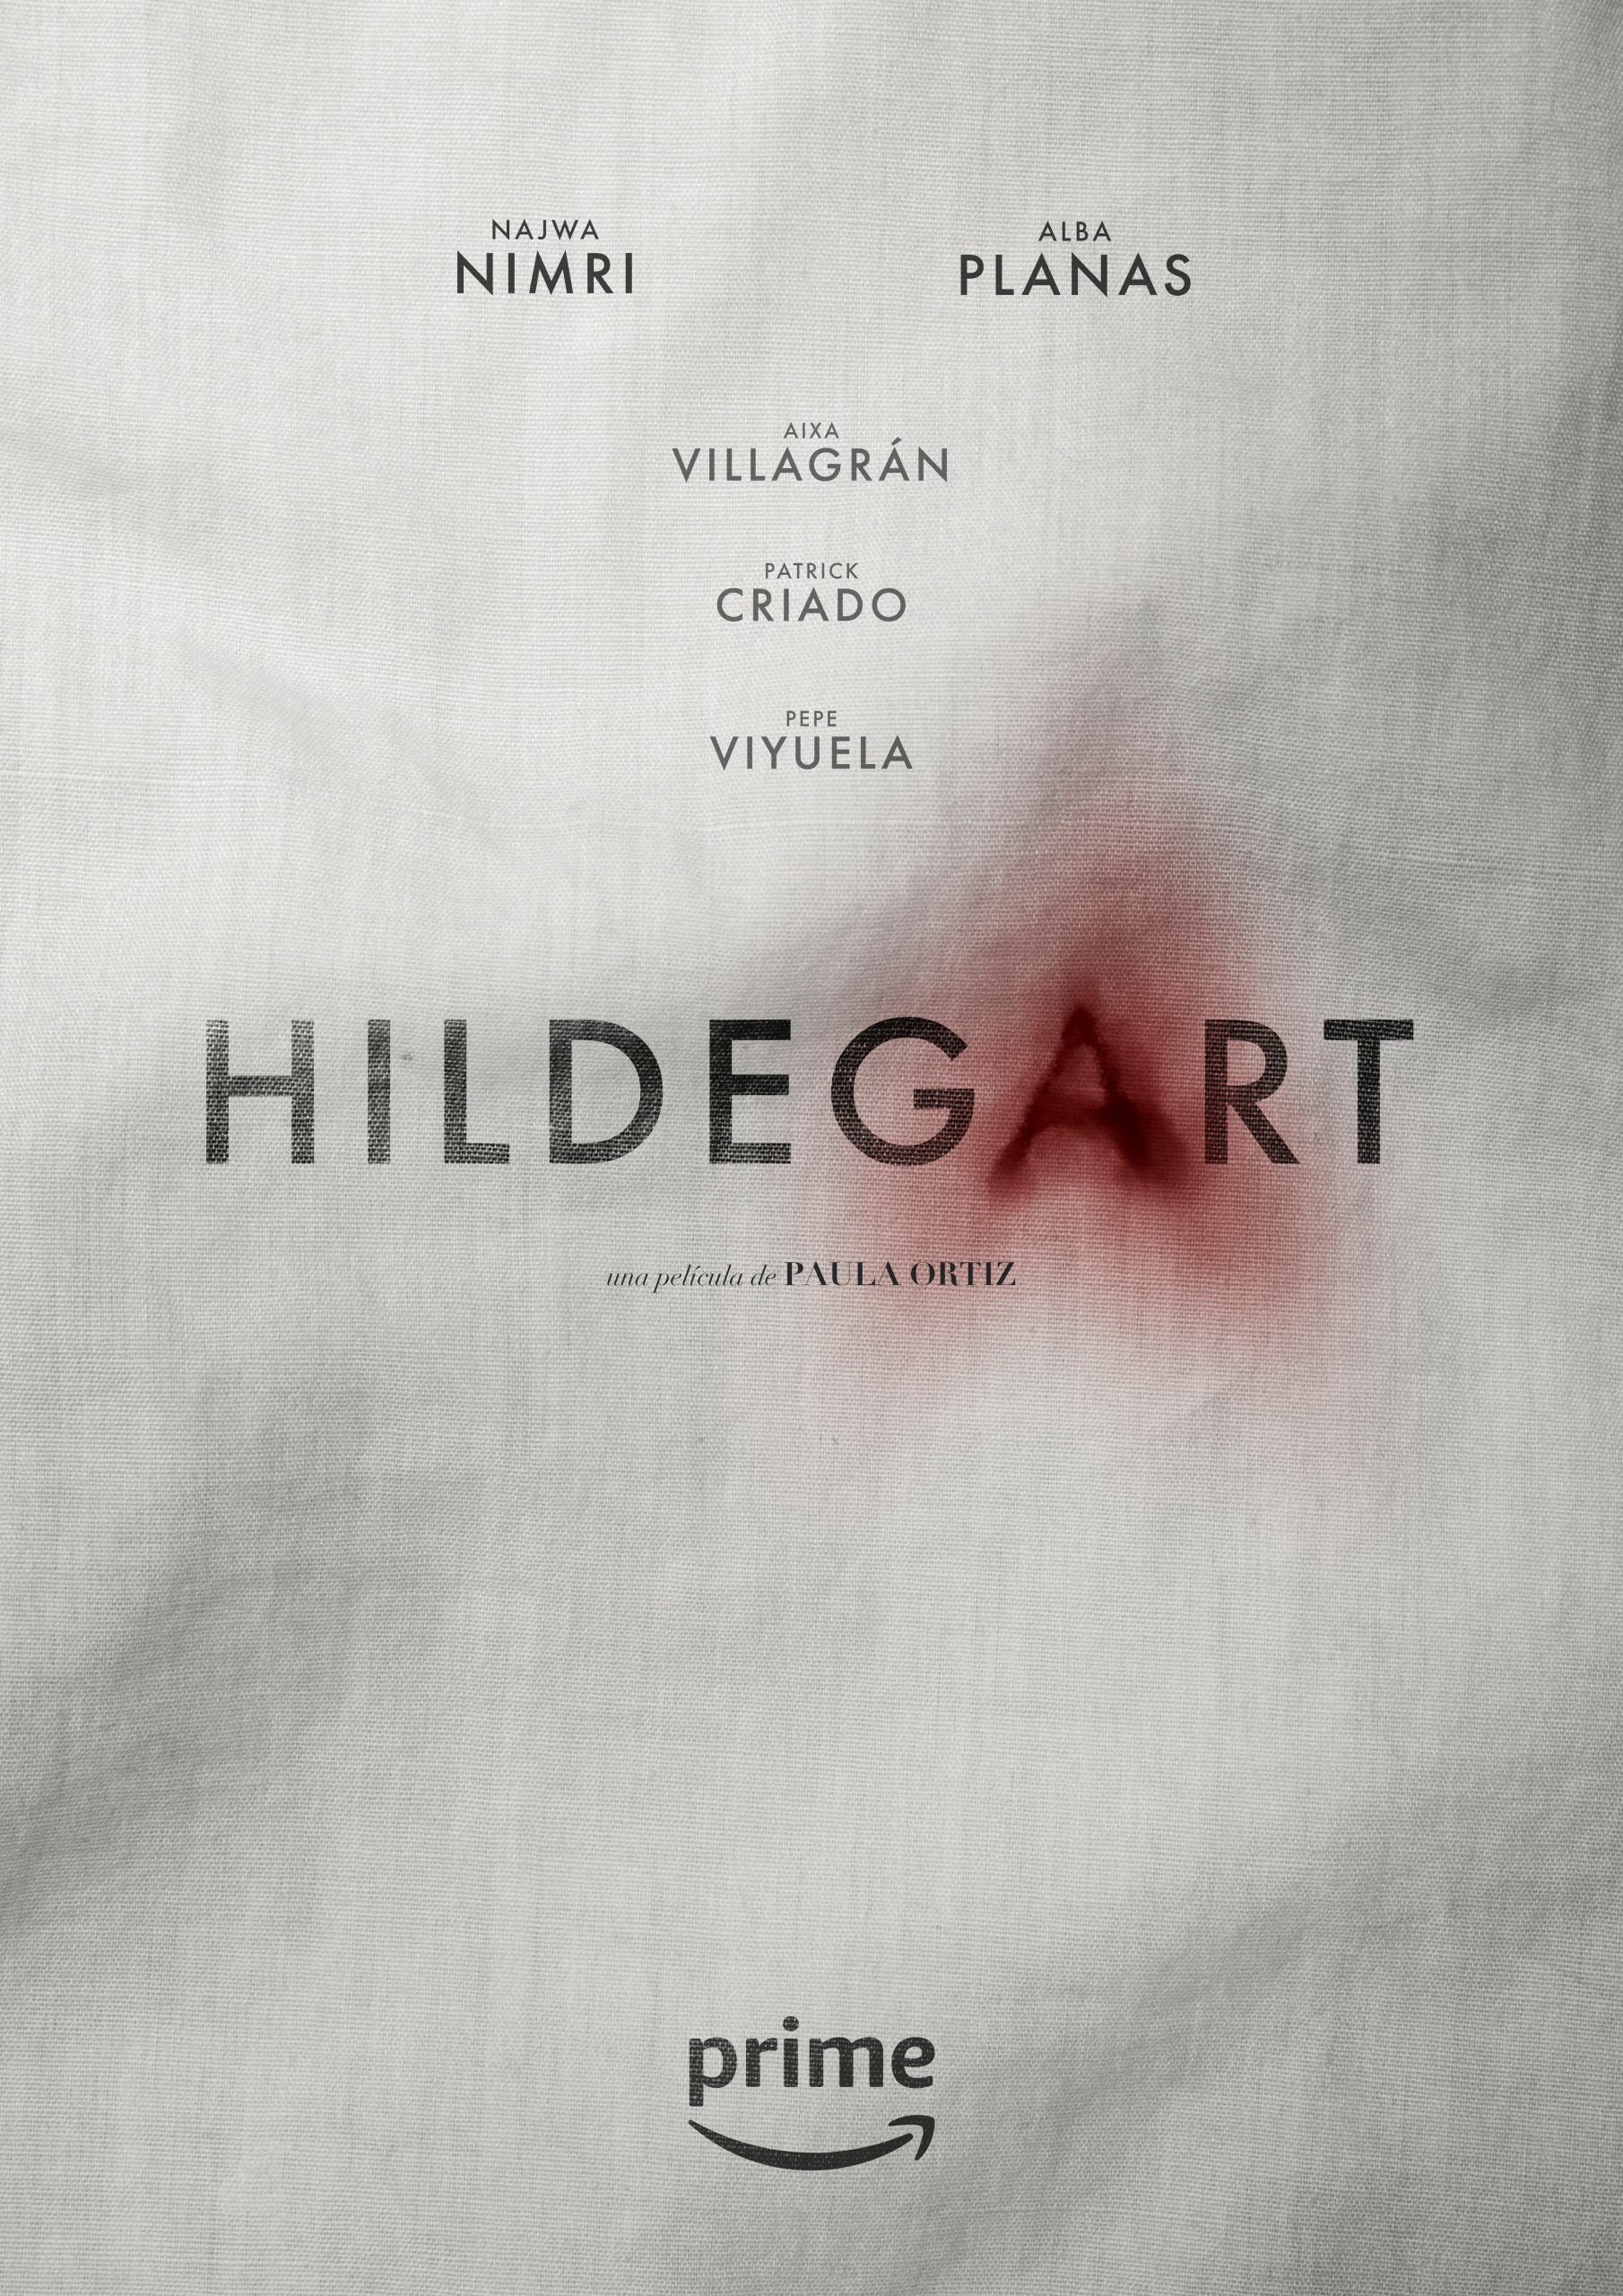 Hildegart – Pre teaser